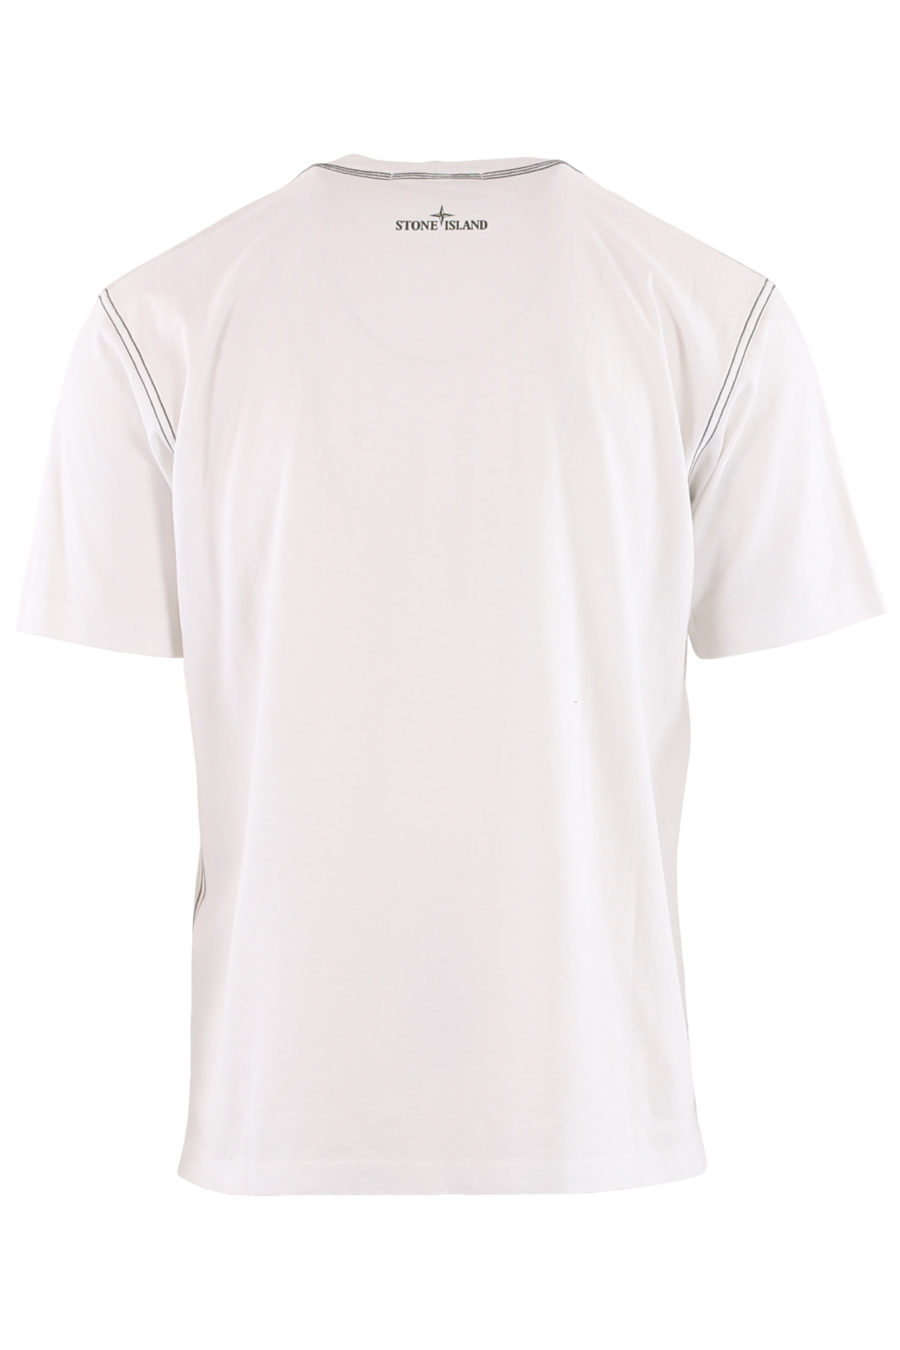 Weißes T-Shirt mit großem Logodruck und grünen Streifen - 60491c6265a2927d8cfc469bcc0e64813ae99bb5